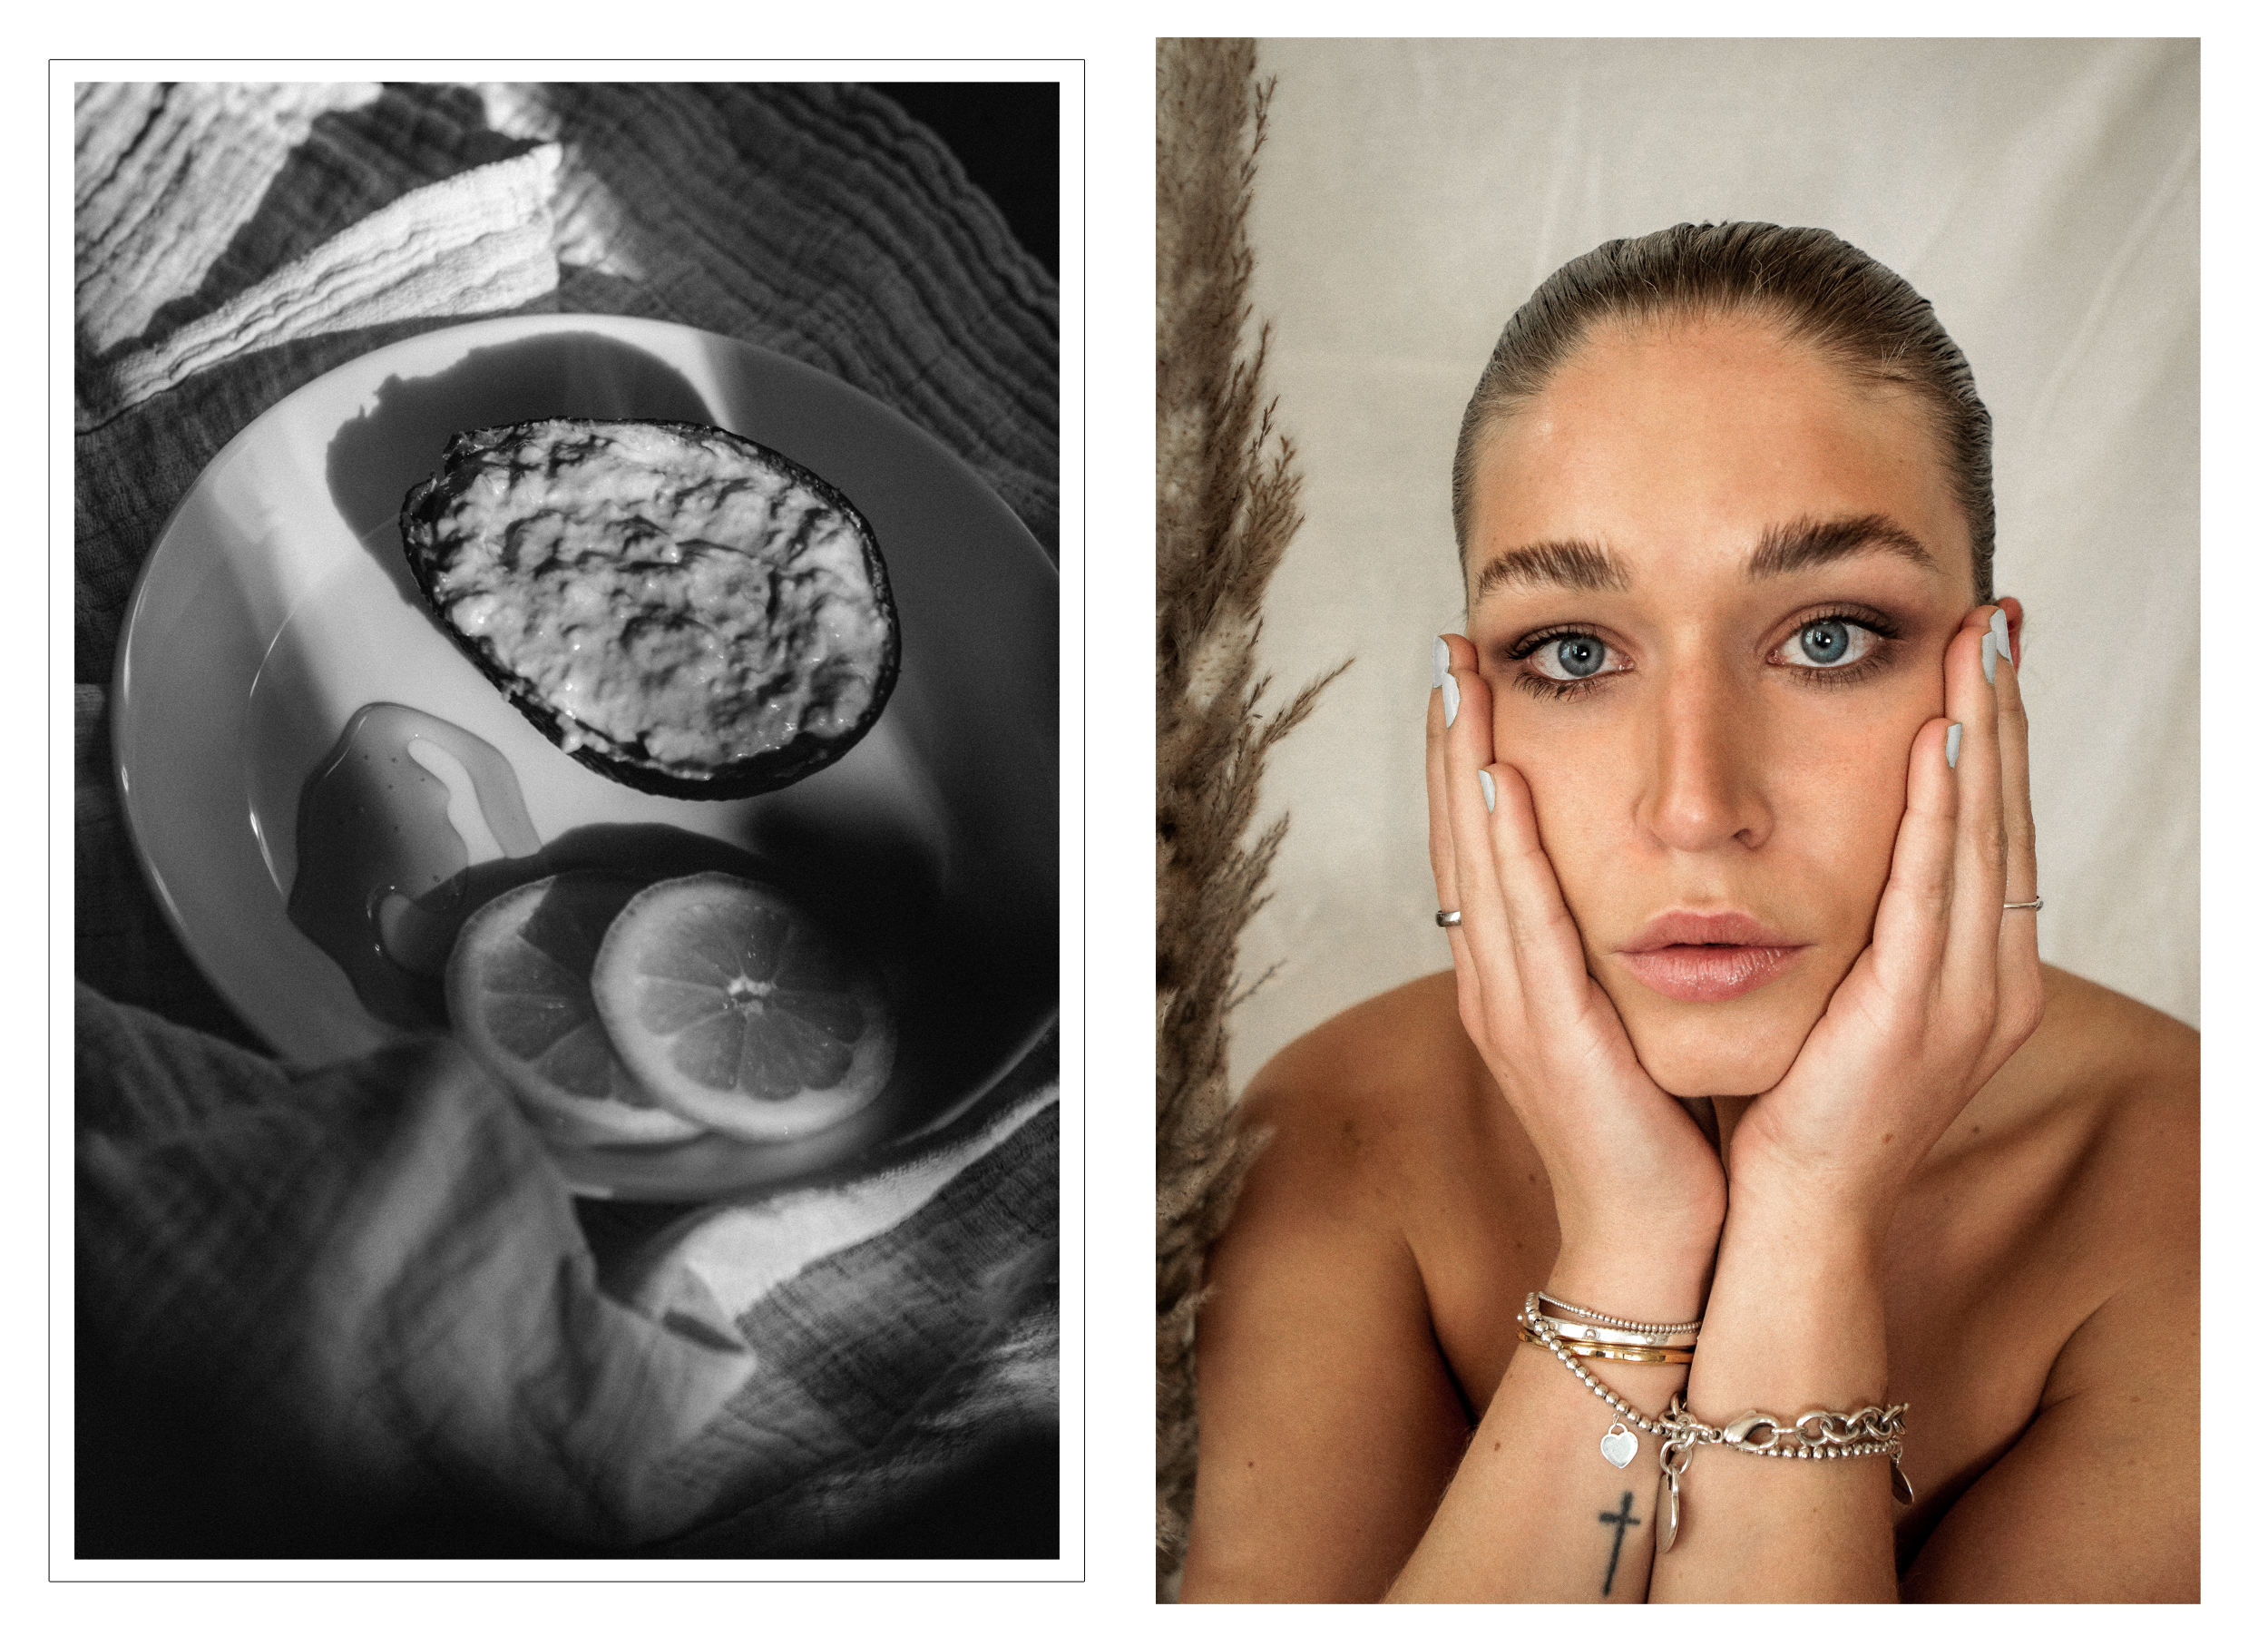 lauralamode-beautyblogger-gesichtsmasken-skincare-skin-gesichtsmasken-diy gesichtsmasken-facemask-hausmittel-anti aging-anti pickel-gesichtspflege-vegan-berlin-deutschland